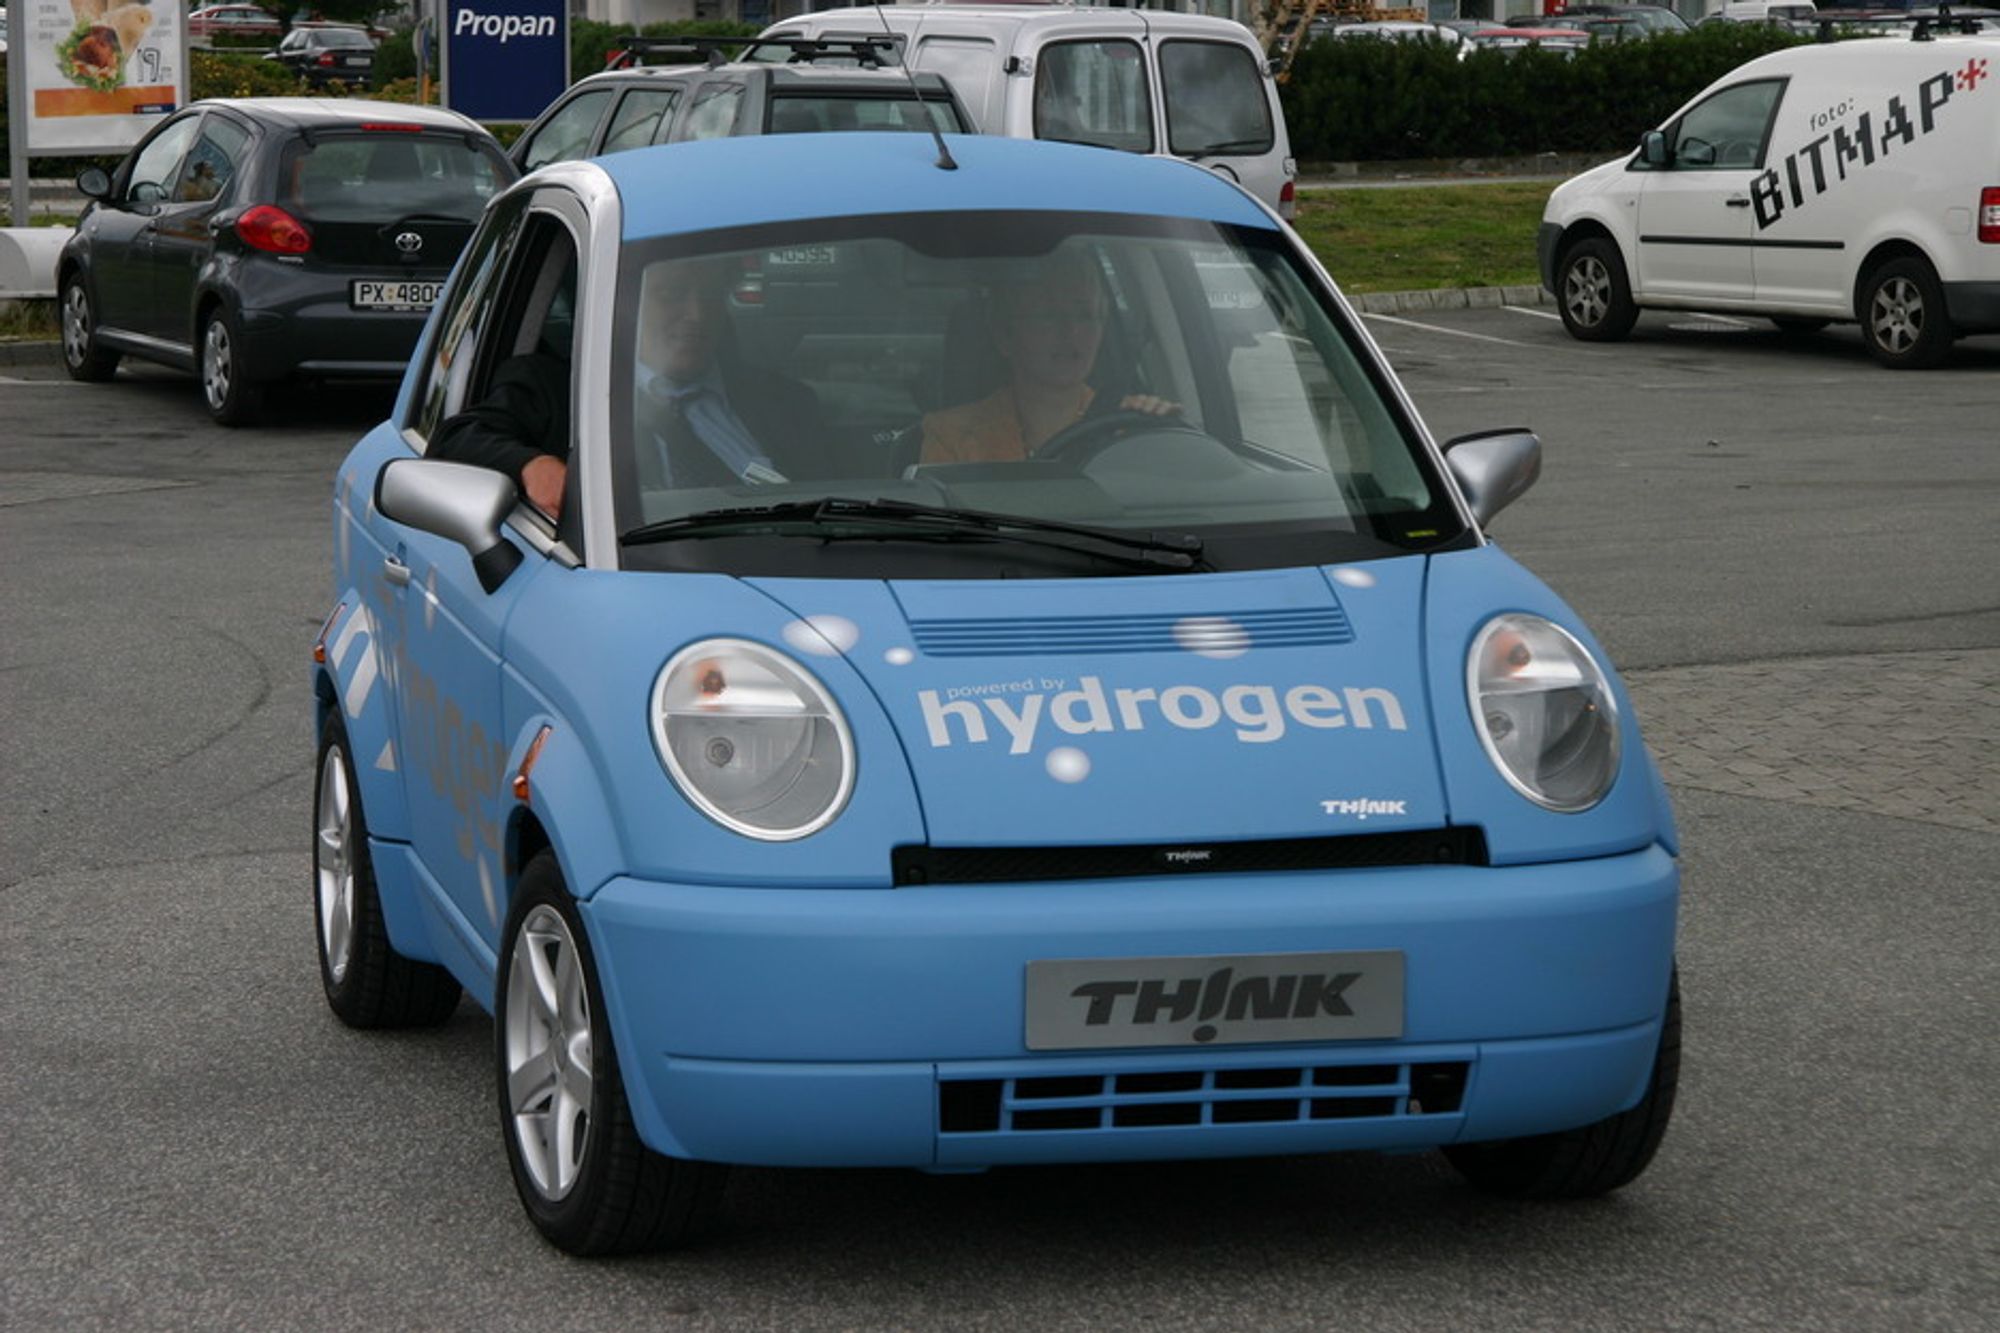 Think Hydrogen ble lansert for offentligheten i 2006, men da gikk den kun på batteri. Brenselcellen som var montert var bare for syns skyld.